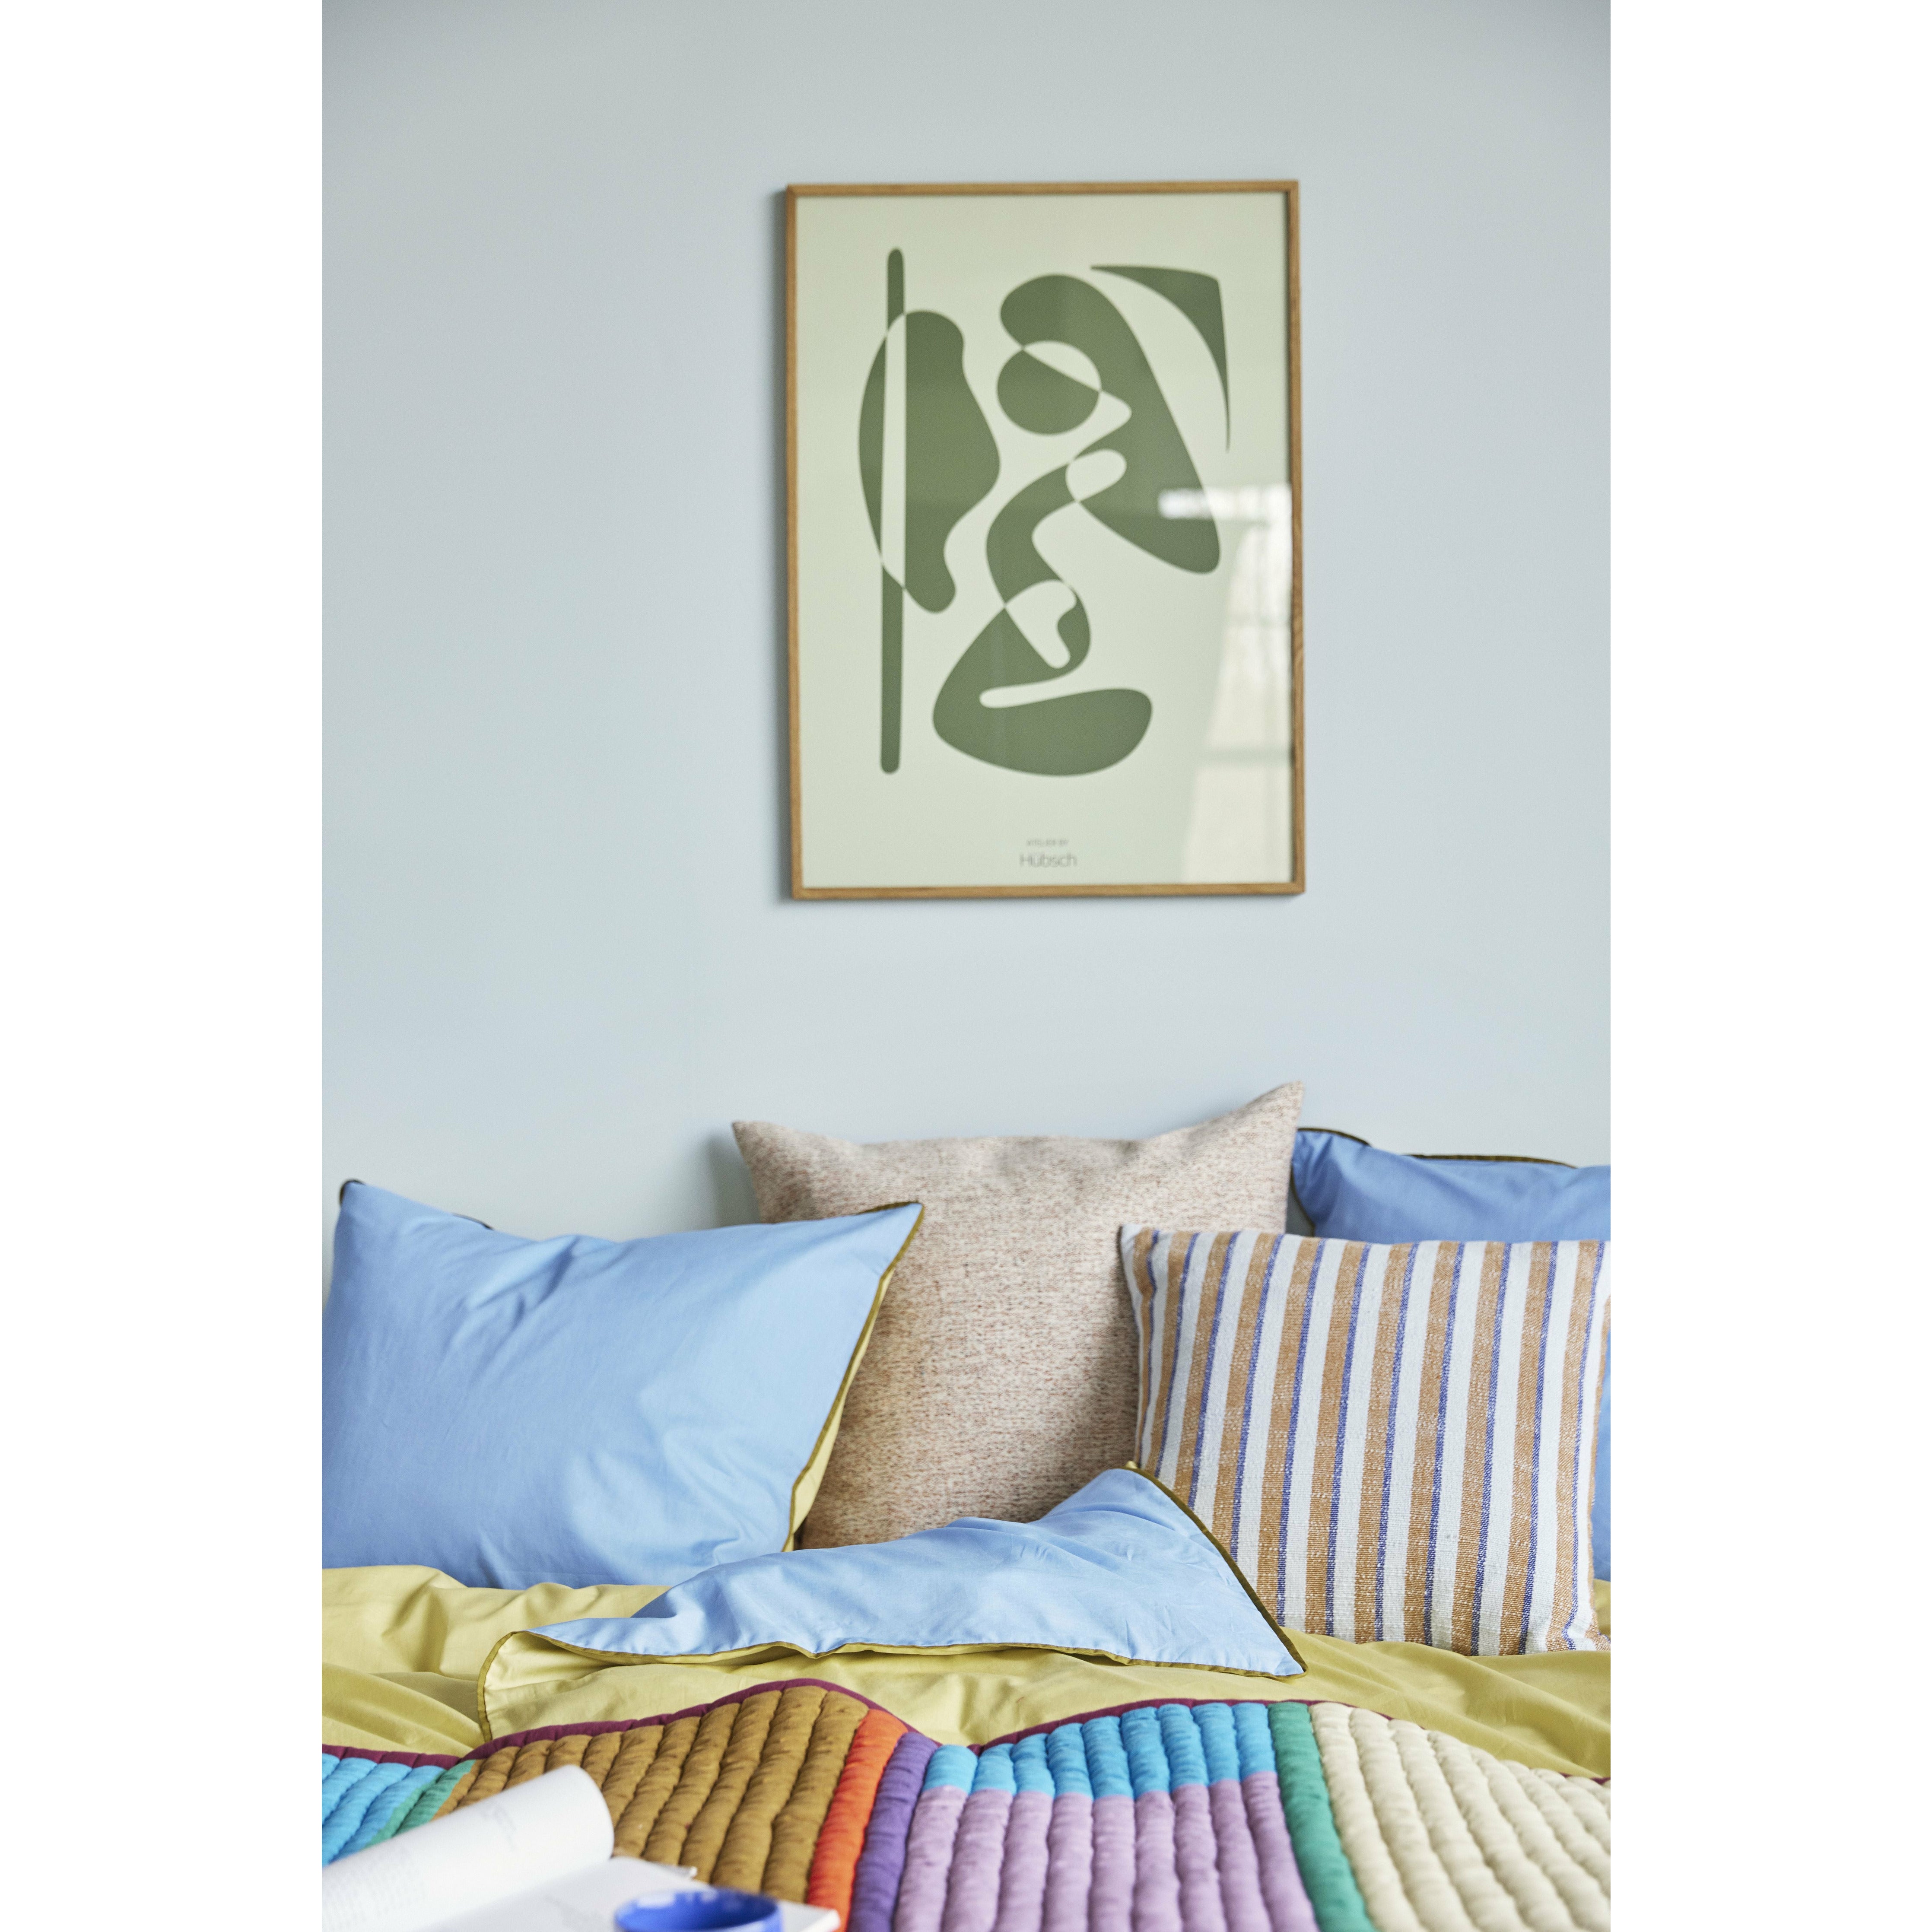 Hübsch Aki sängkläder blå/gul, 80/220 cm